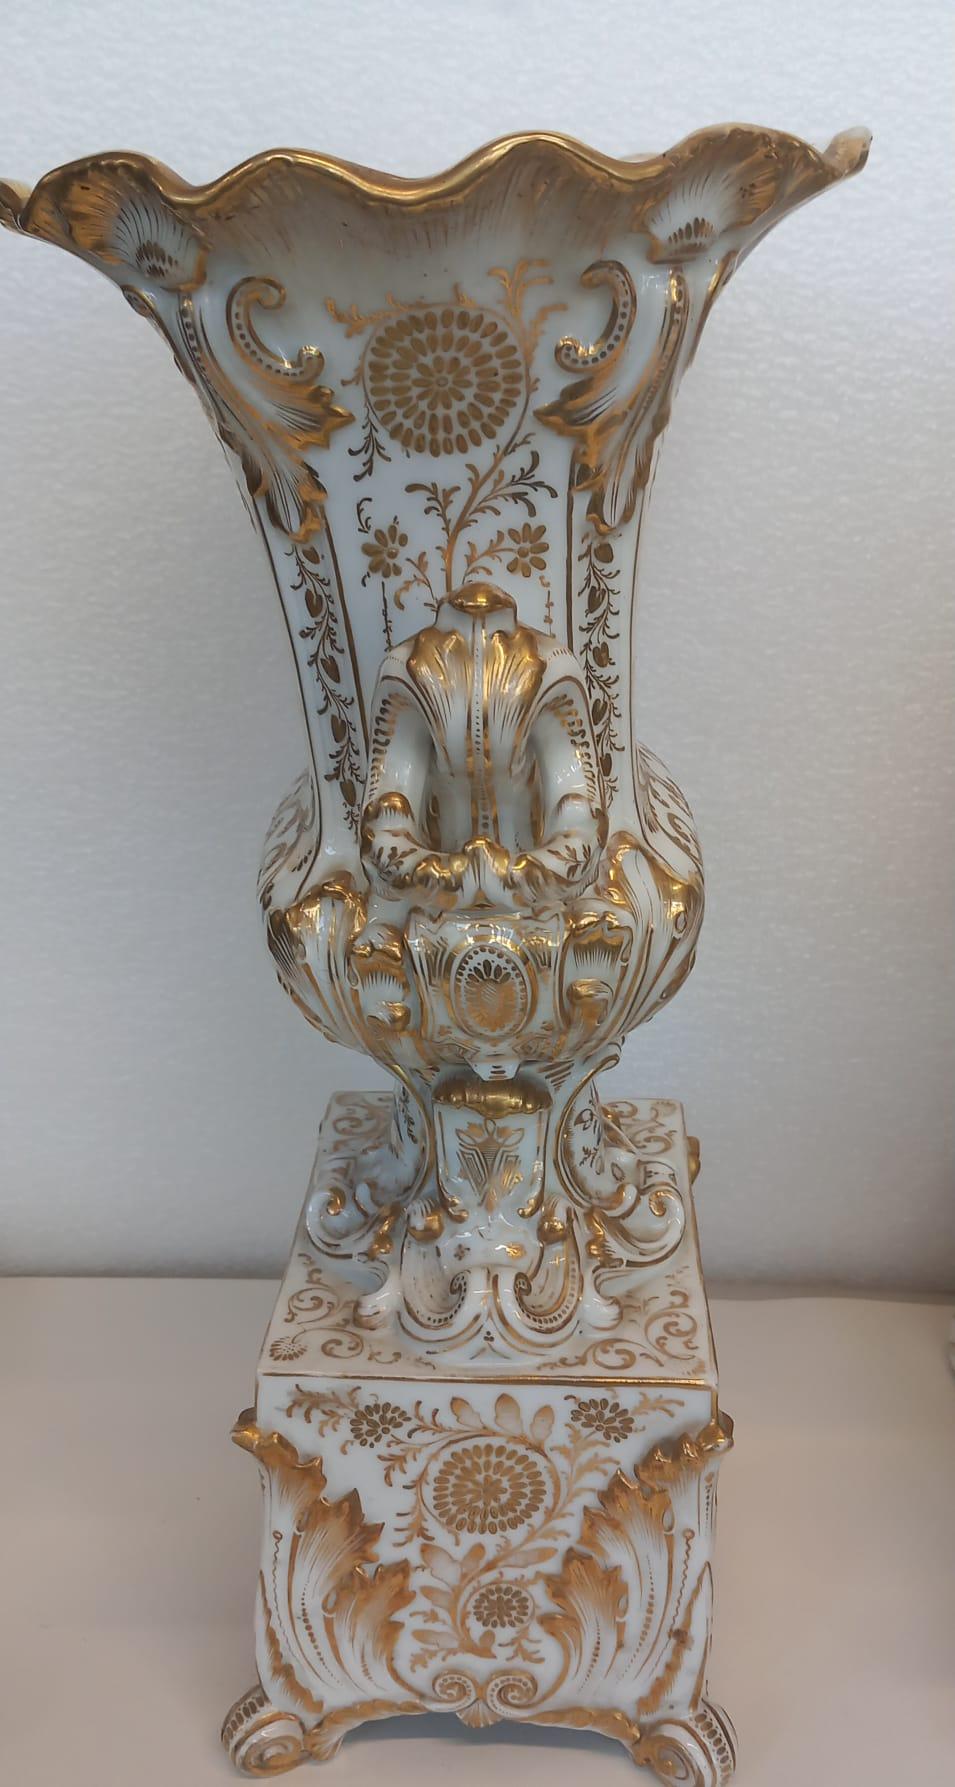 Une élégante pendule de cheminée et ses vases d'accompagnement fabriqués à Paris vers 1860. Très proche du style de Jacob Petit et provenant très probablement de son usine, chaque pièce est dorée de manière élaborée et peinte à la main avec des